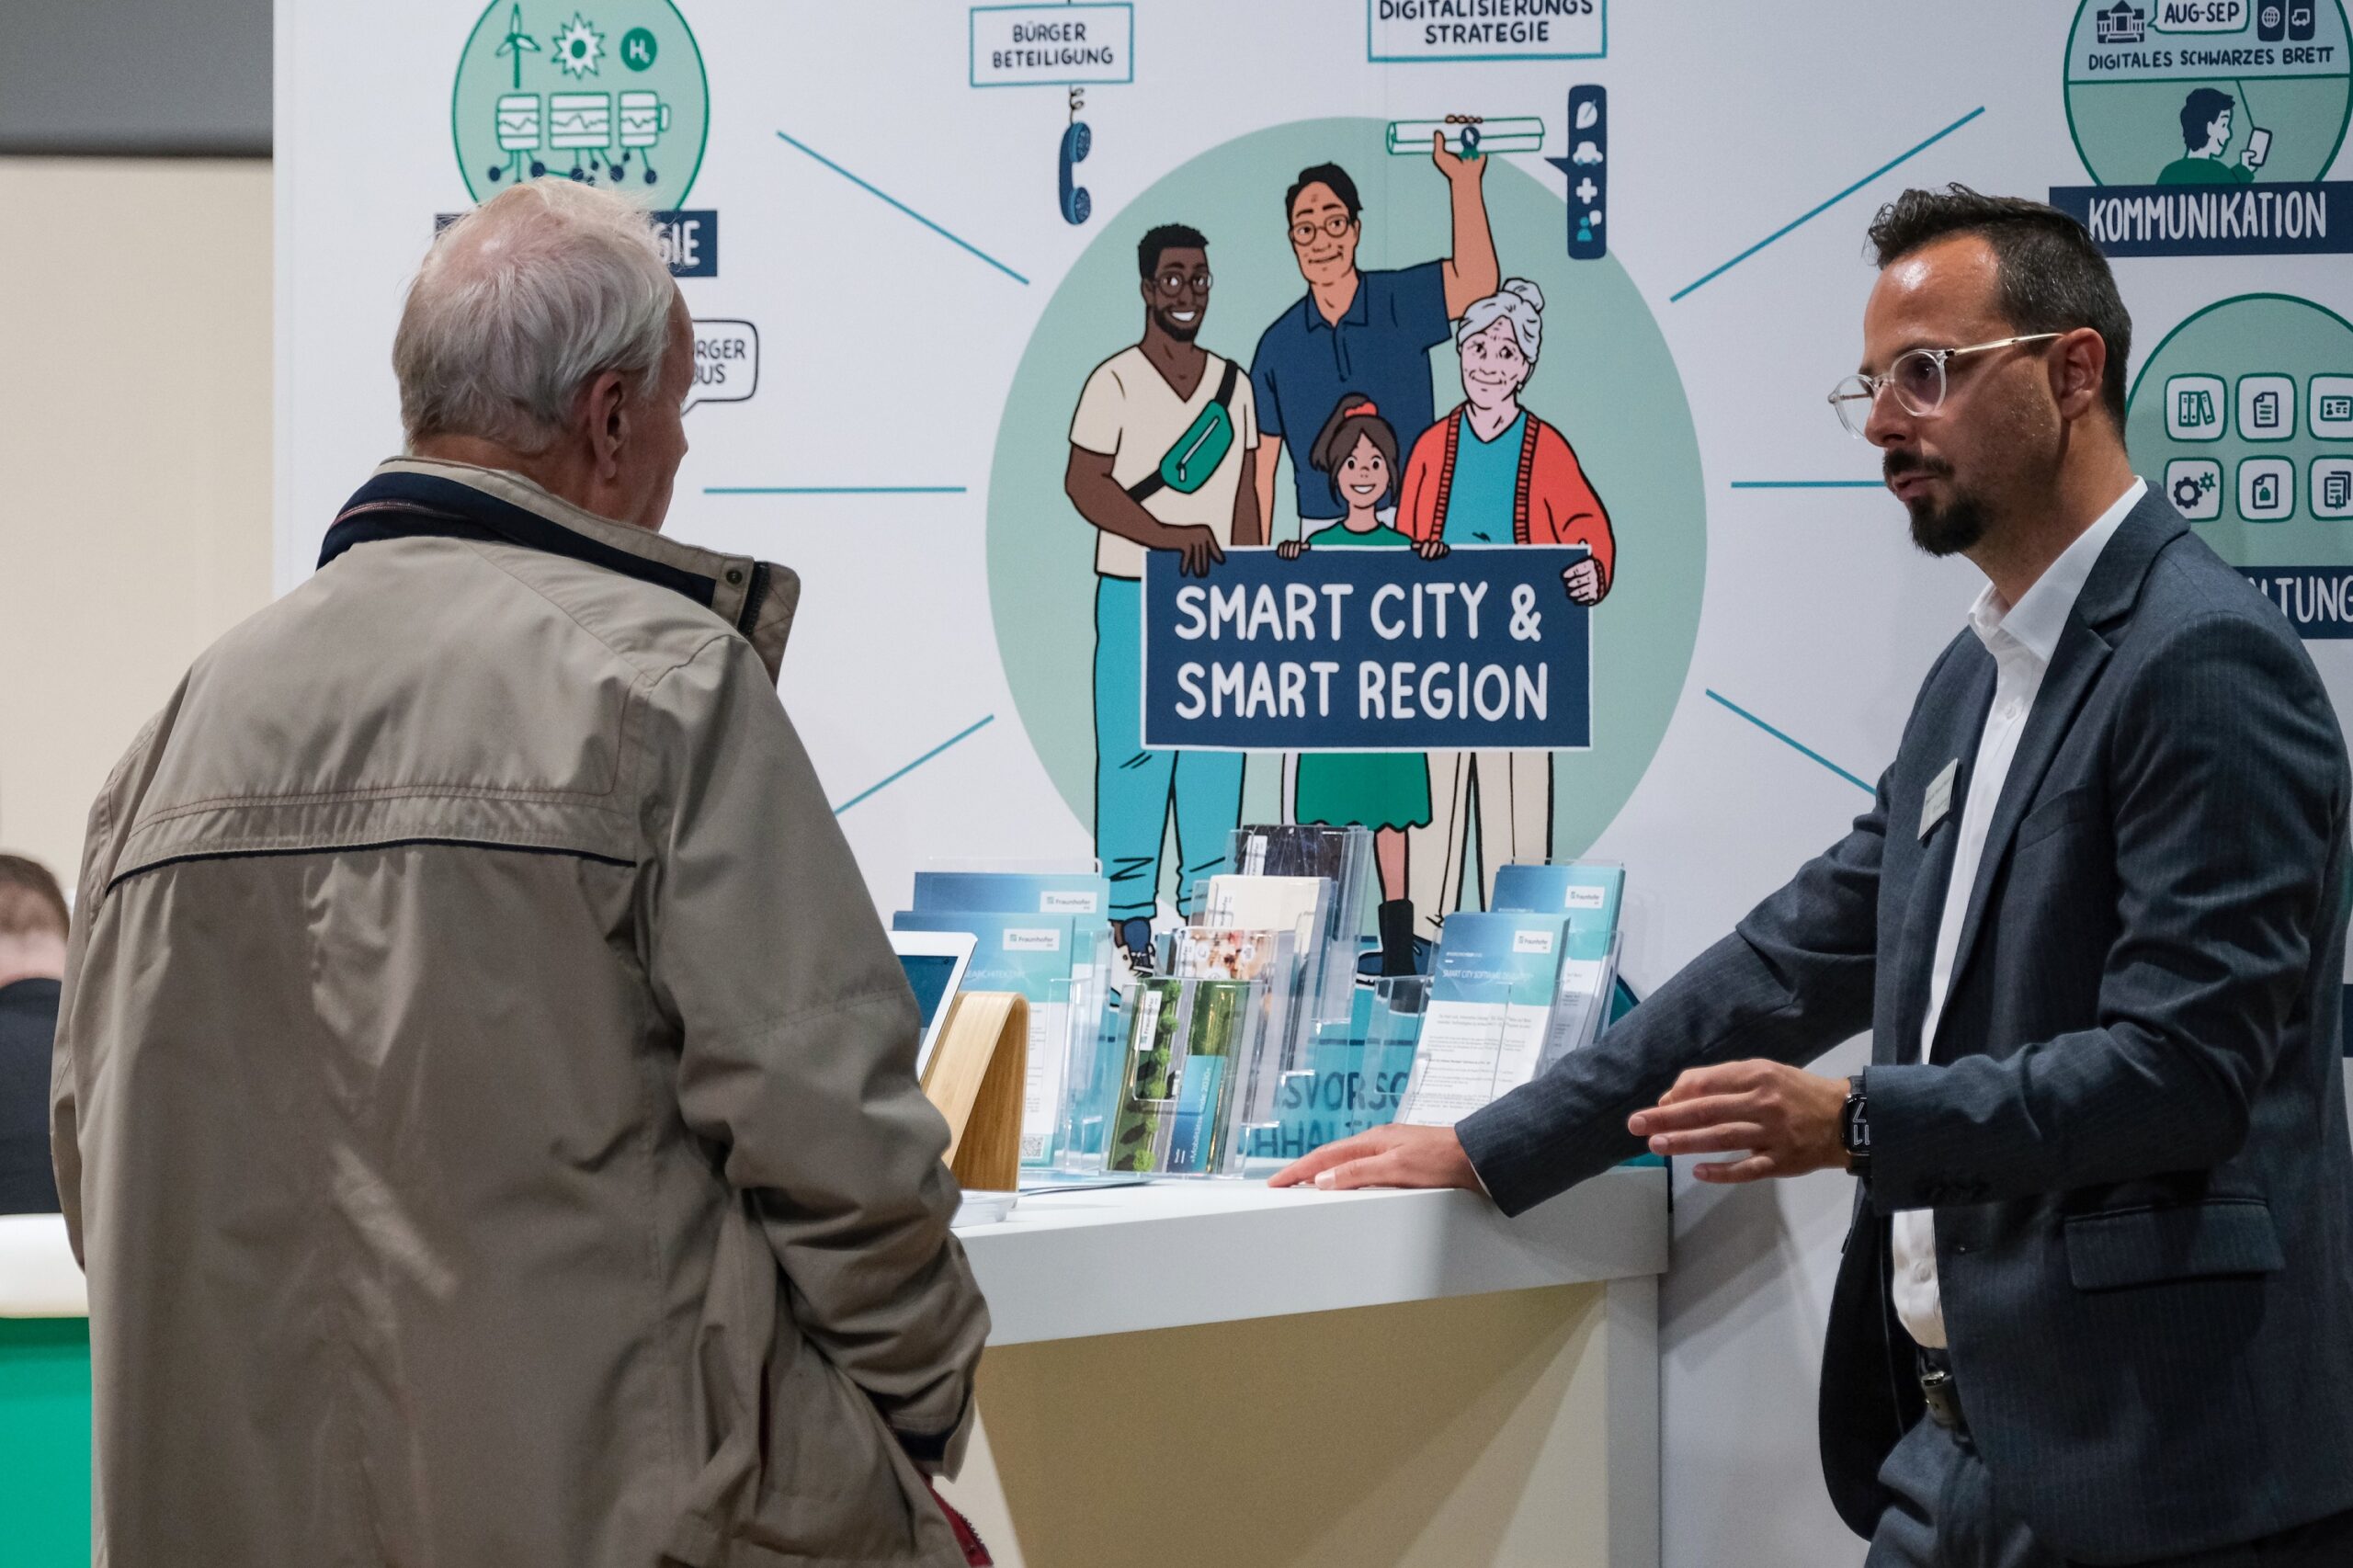 Besucher unterhält ishc mit unserem Kollegen und informiert sich am Stand über Themen wie Smart City und Smart Region